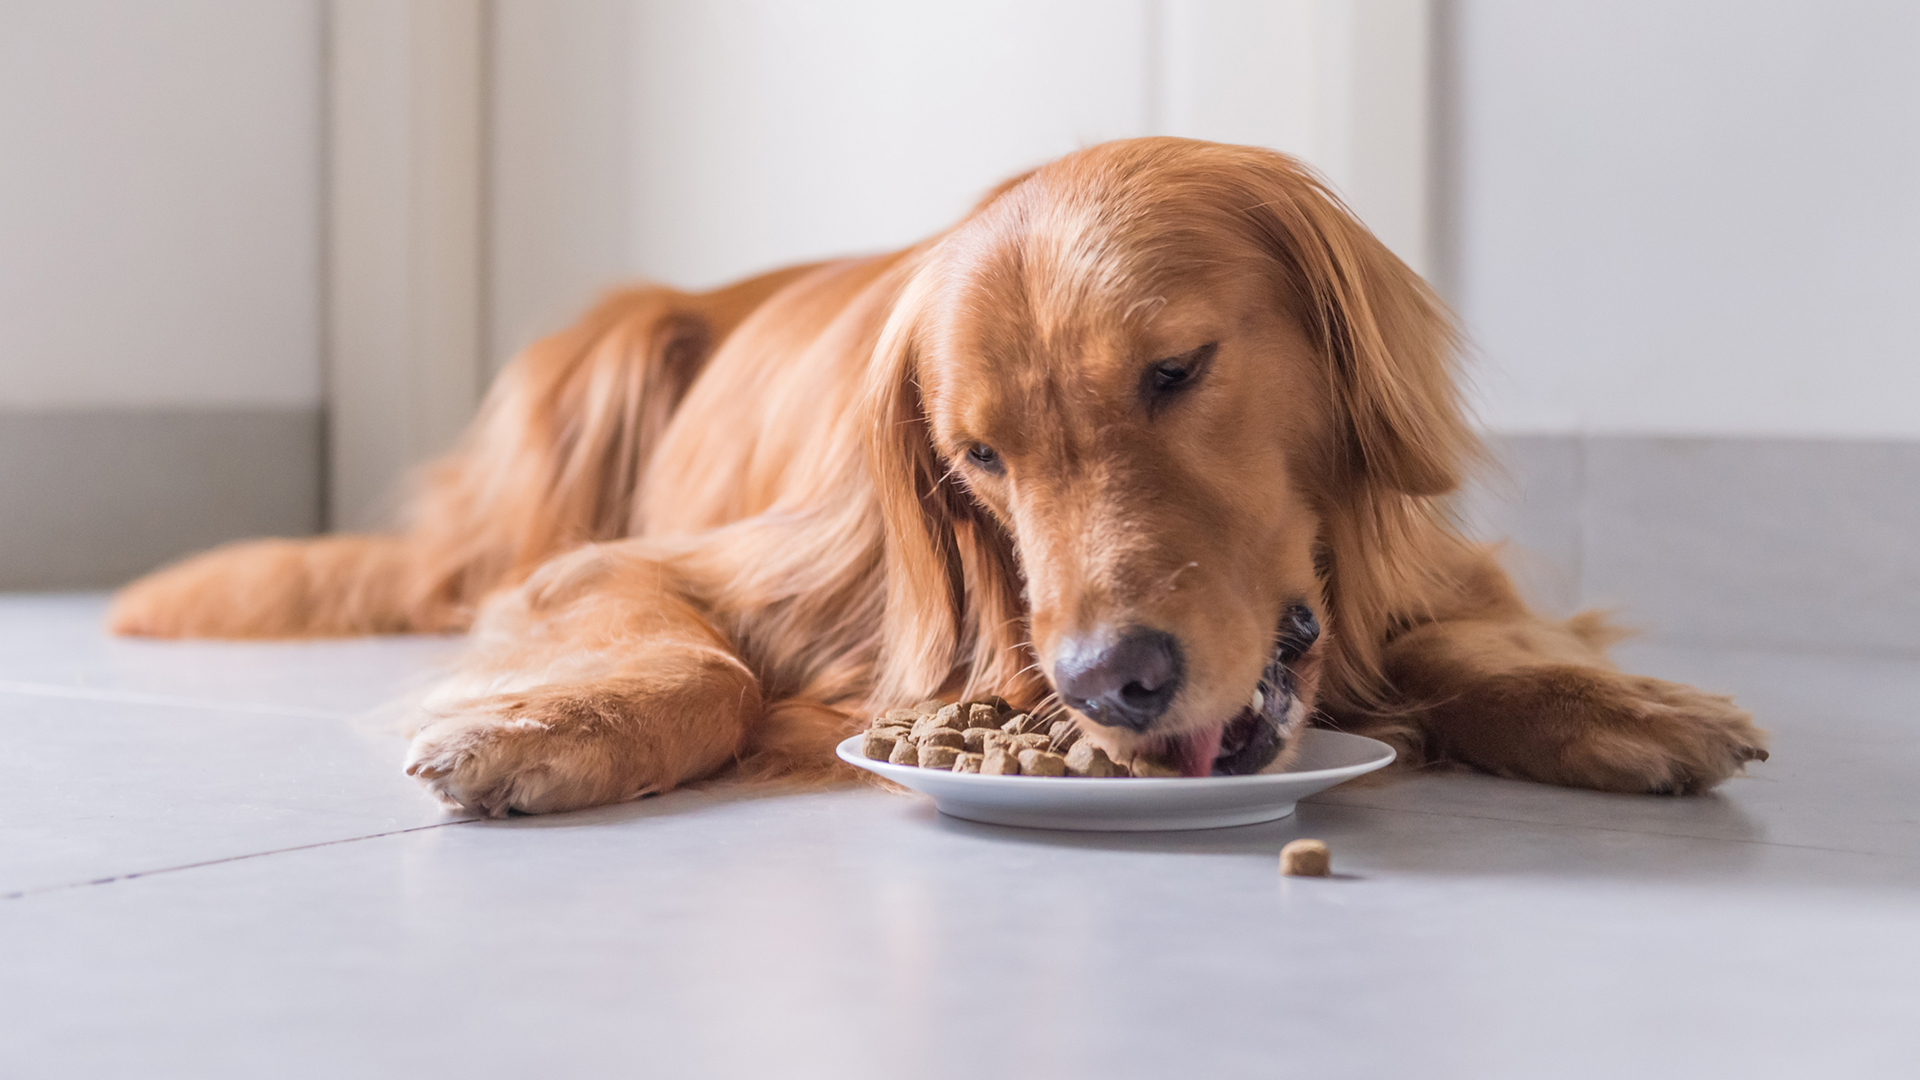 Áp dụng chế độ ăn phù hợp giúp chó hồi phục nhanh chóng hơn